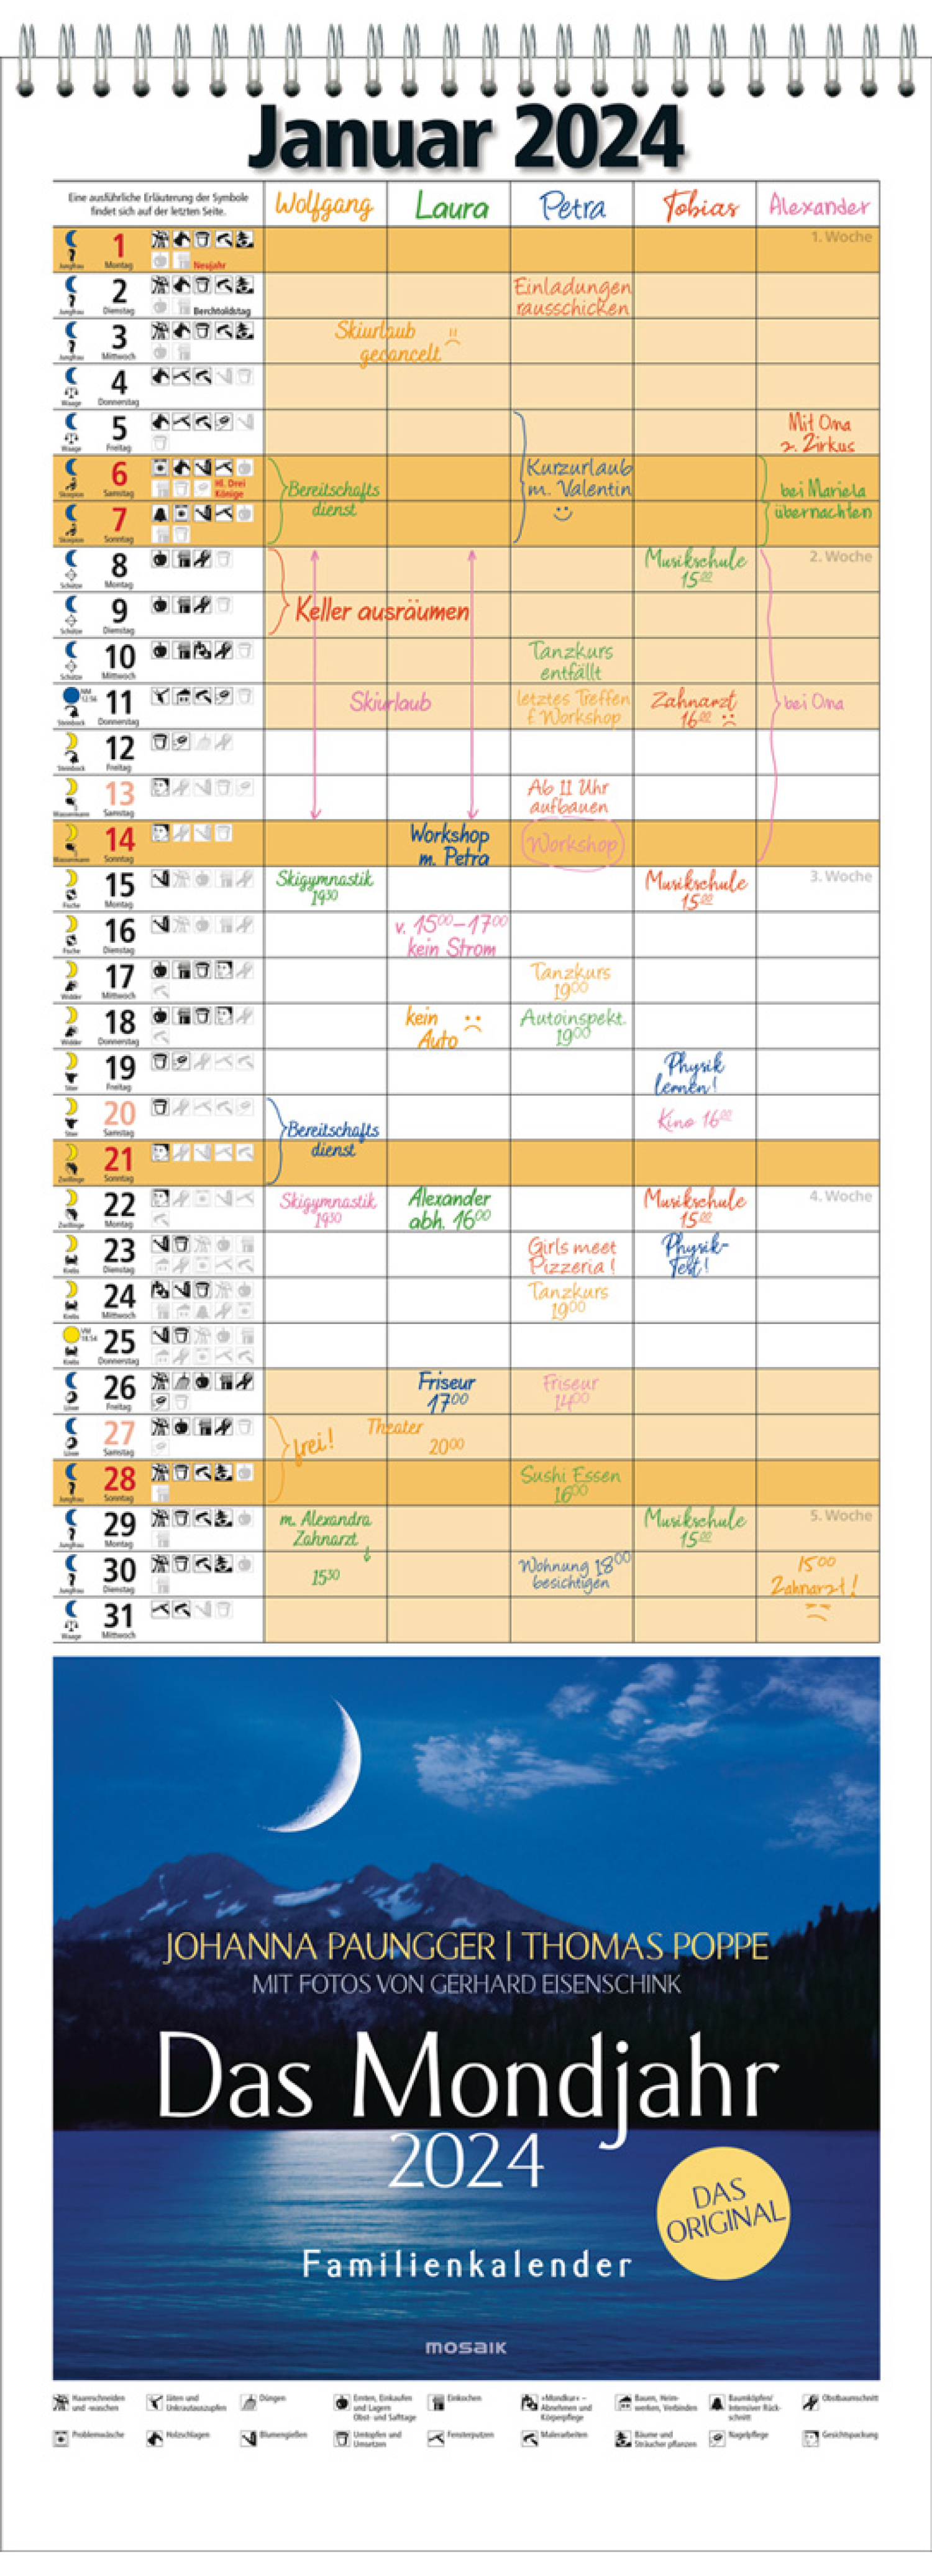 Das Mondjahr 2024 – Familienkalender, Produktbild 1